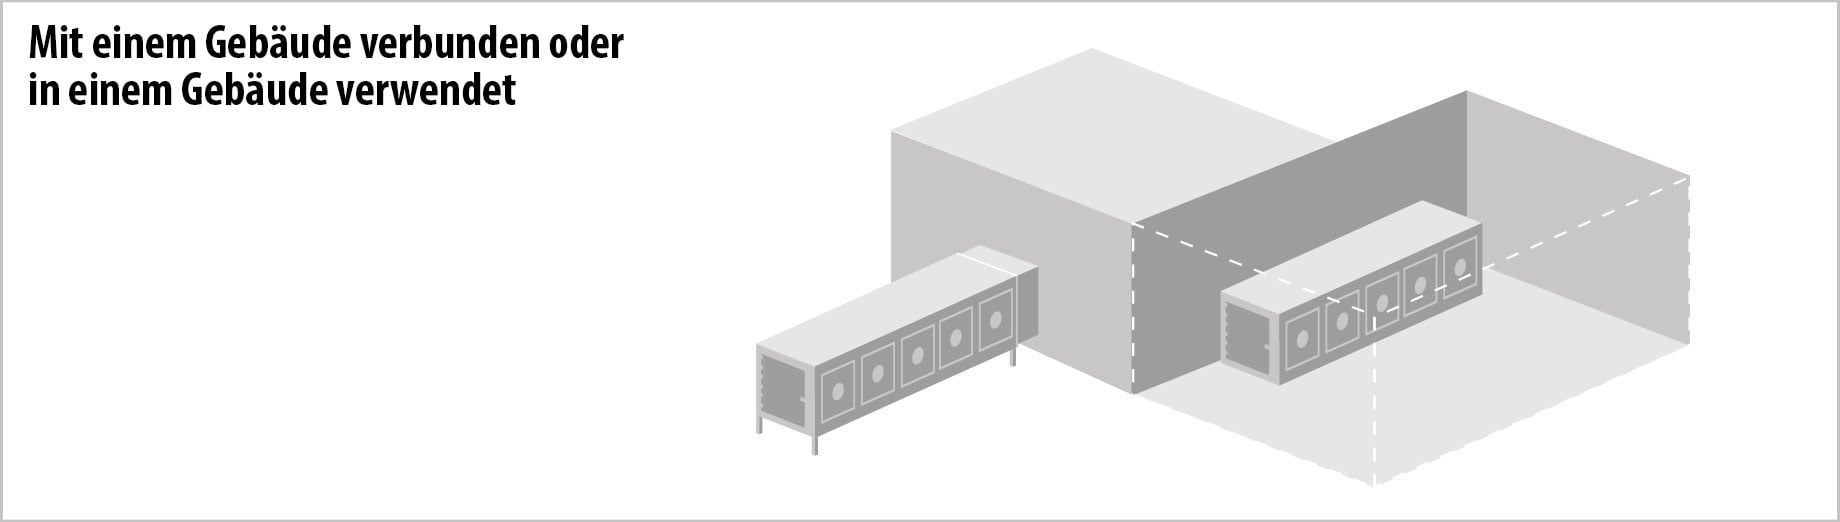 Titan Containers - Verbinden Sie ein Gebäude 